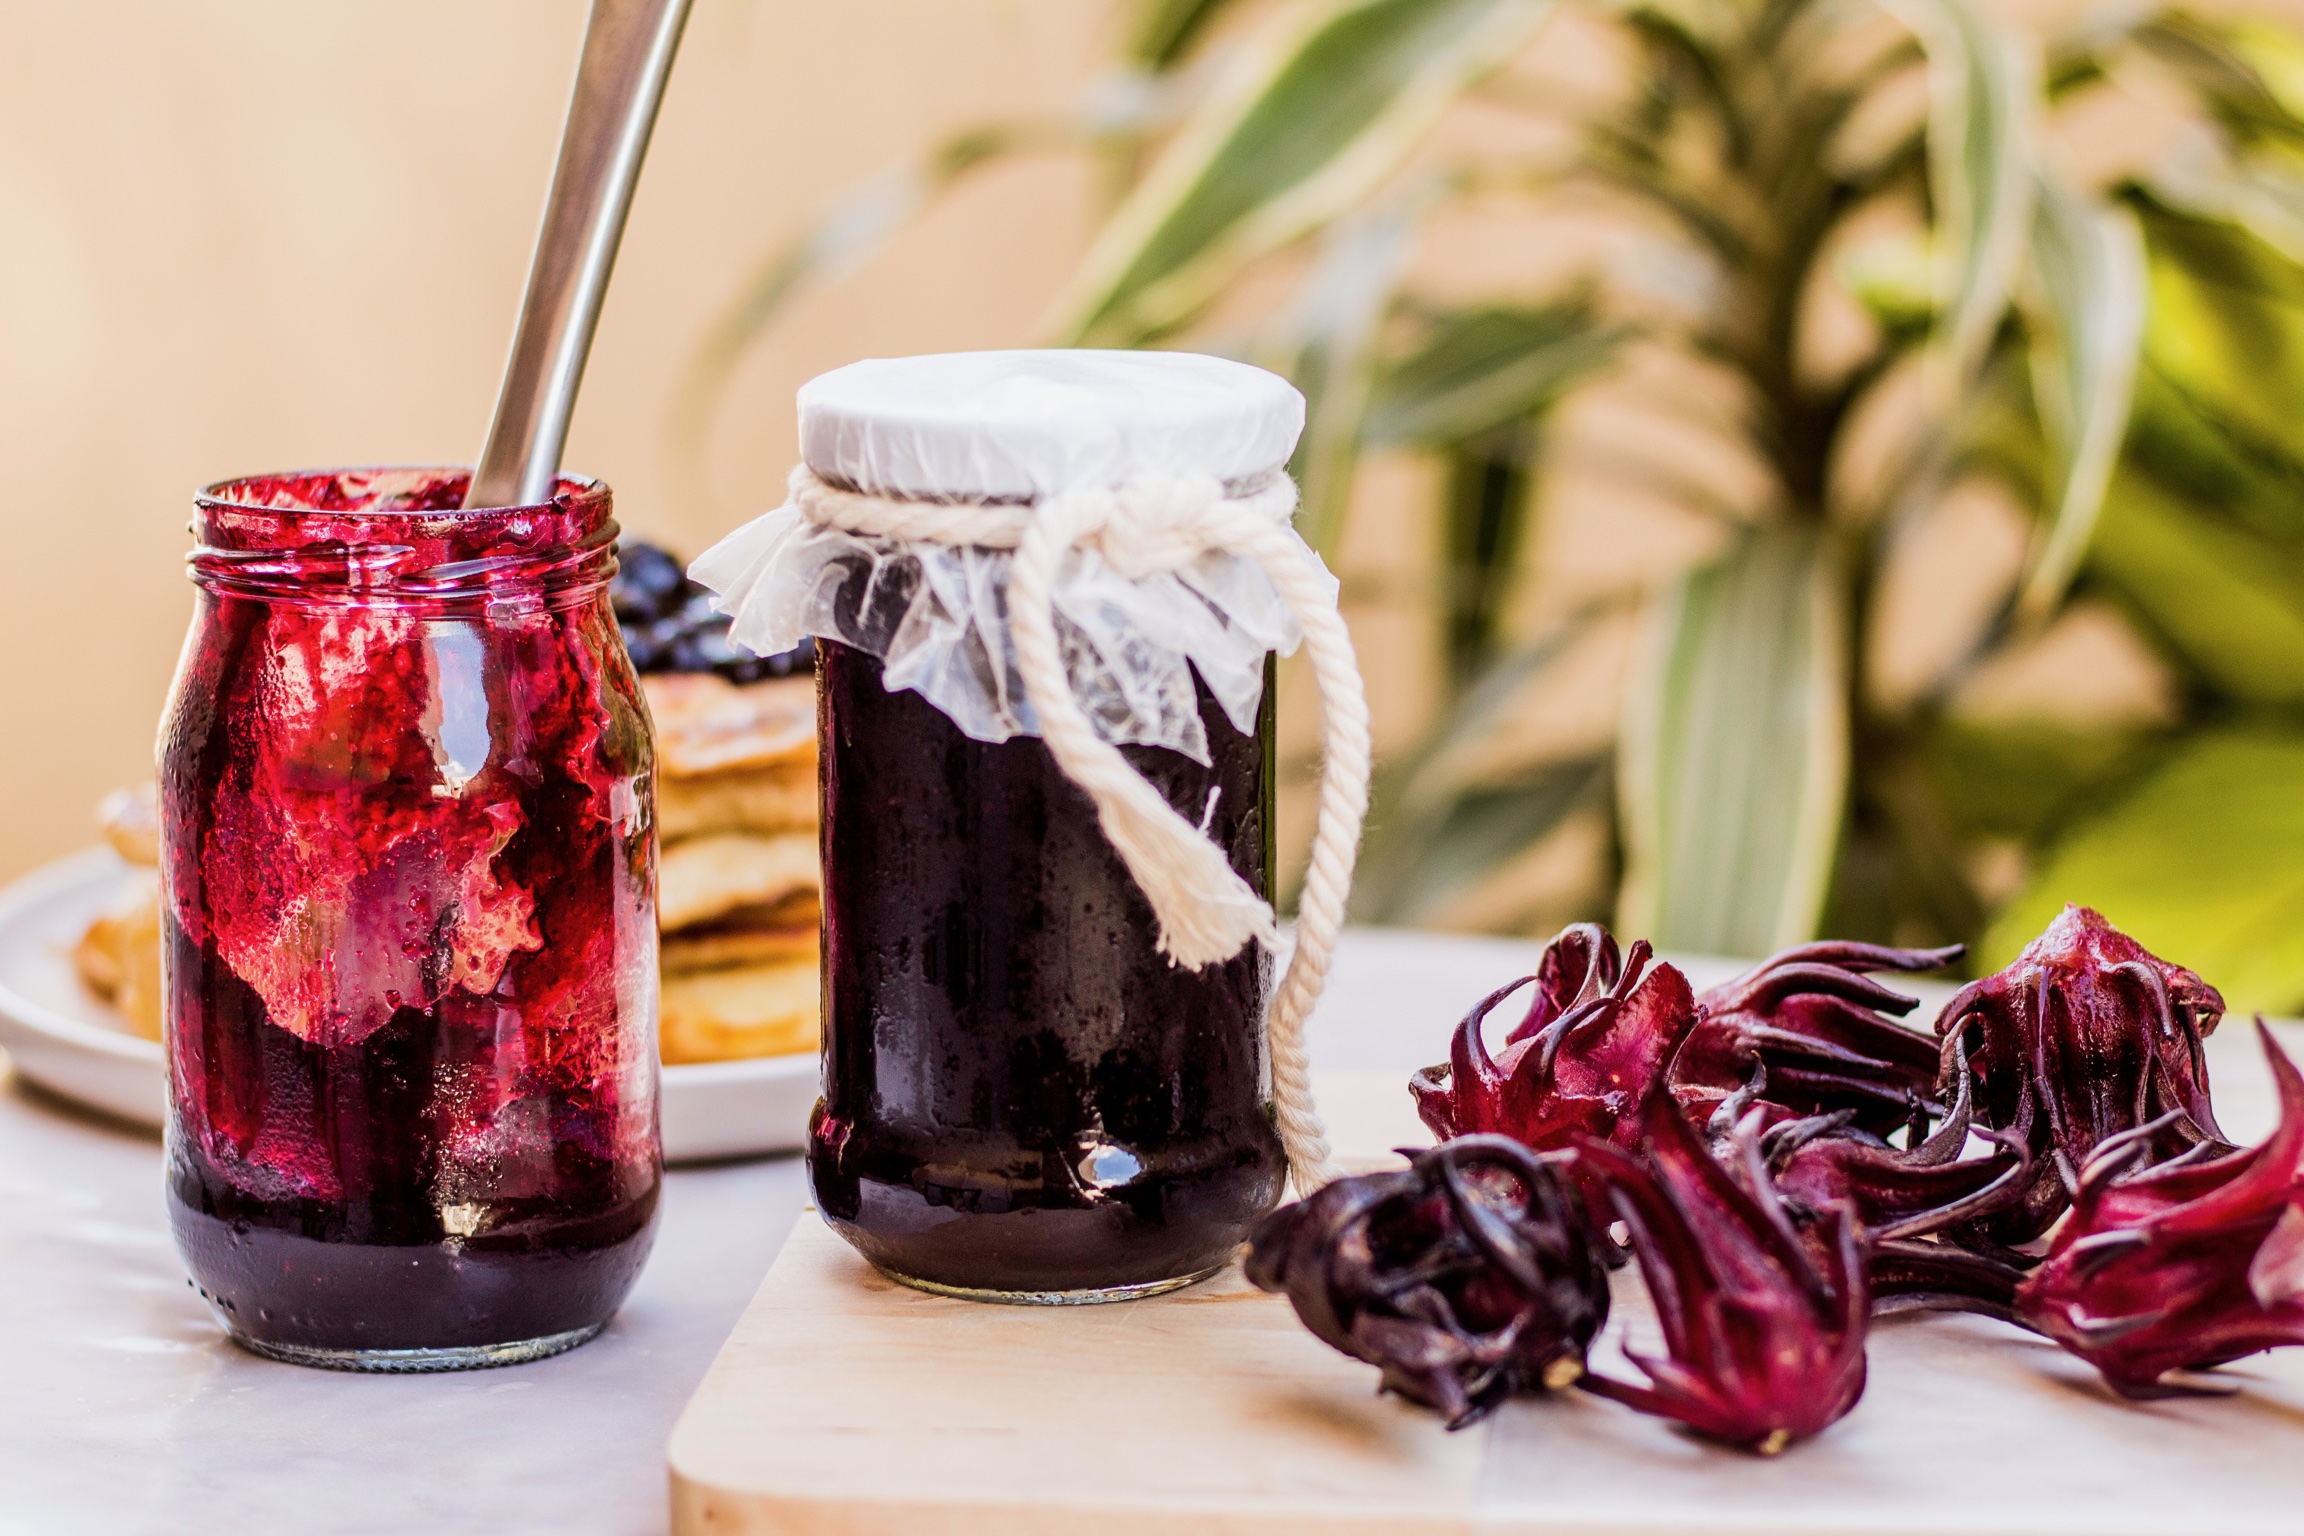 Sorrel jam — a gorgeous spread with a unique flavour